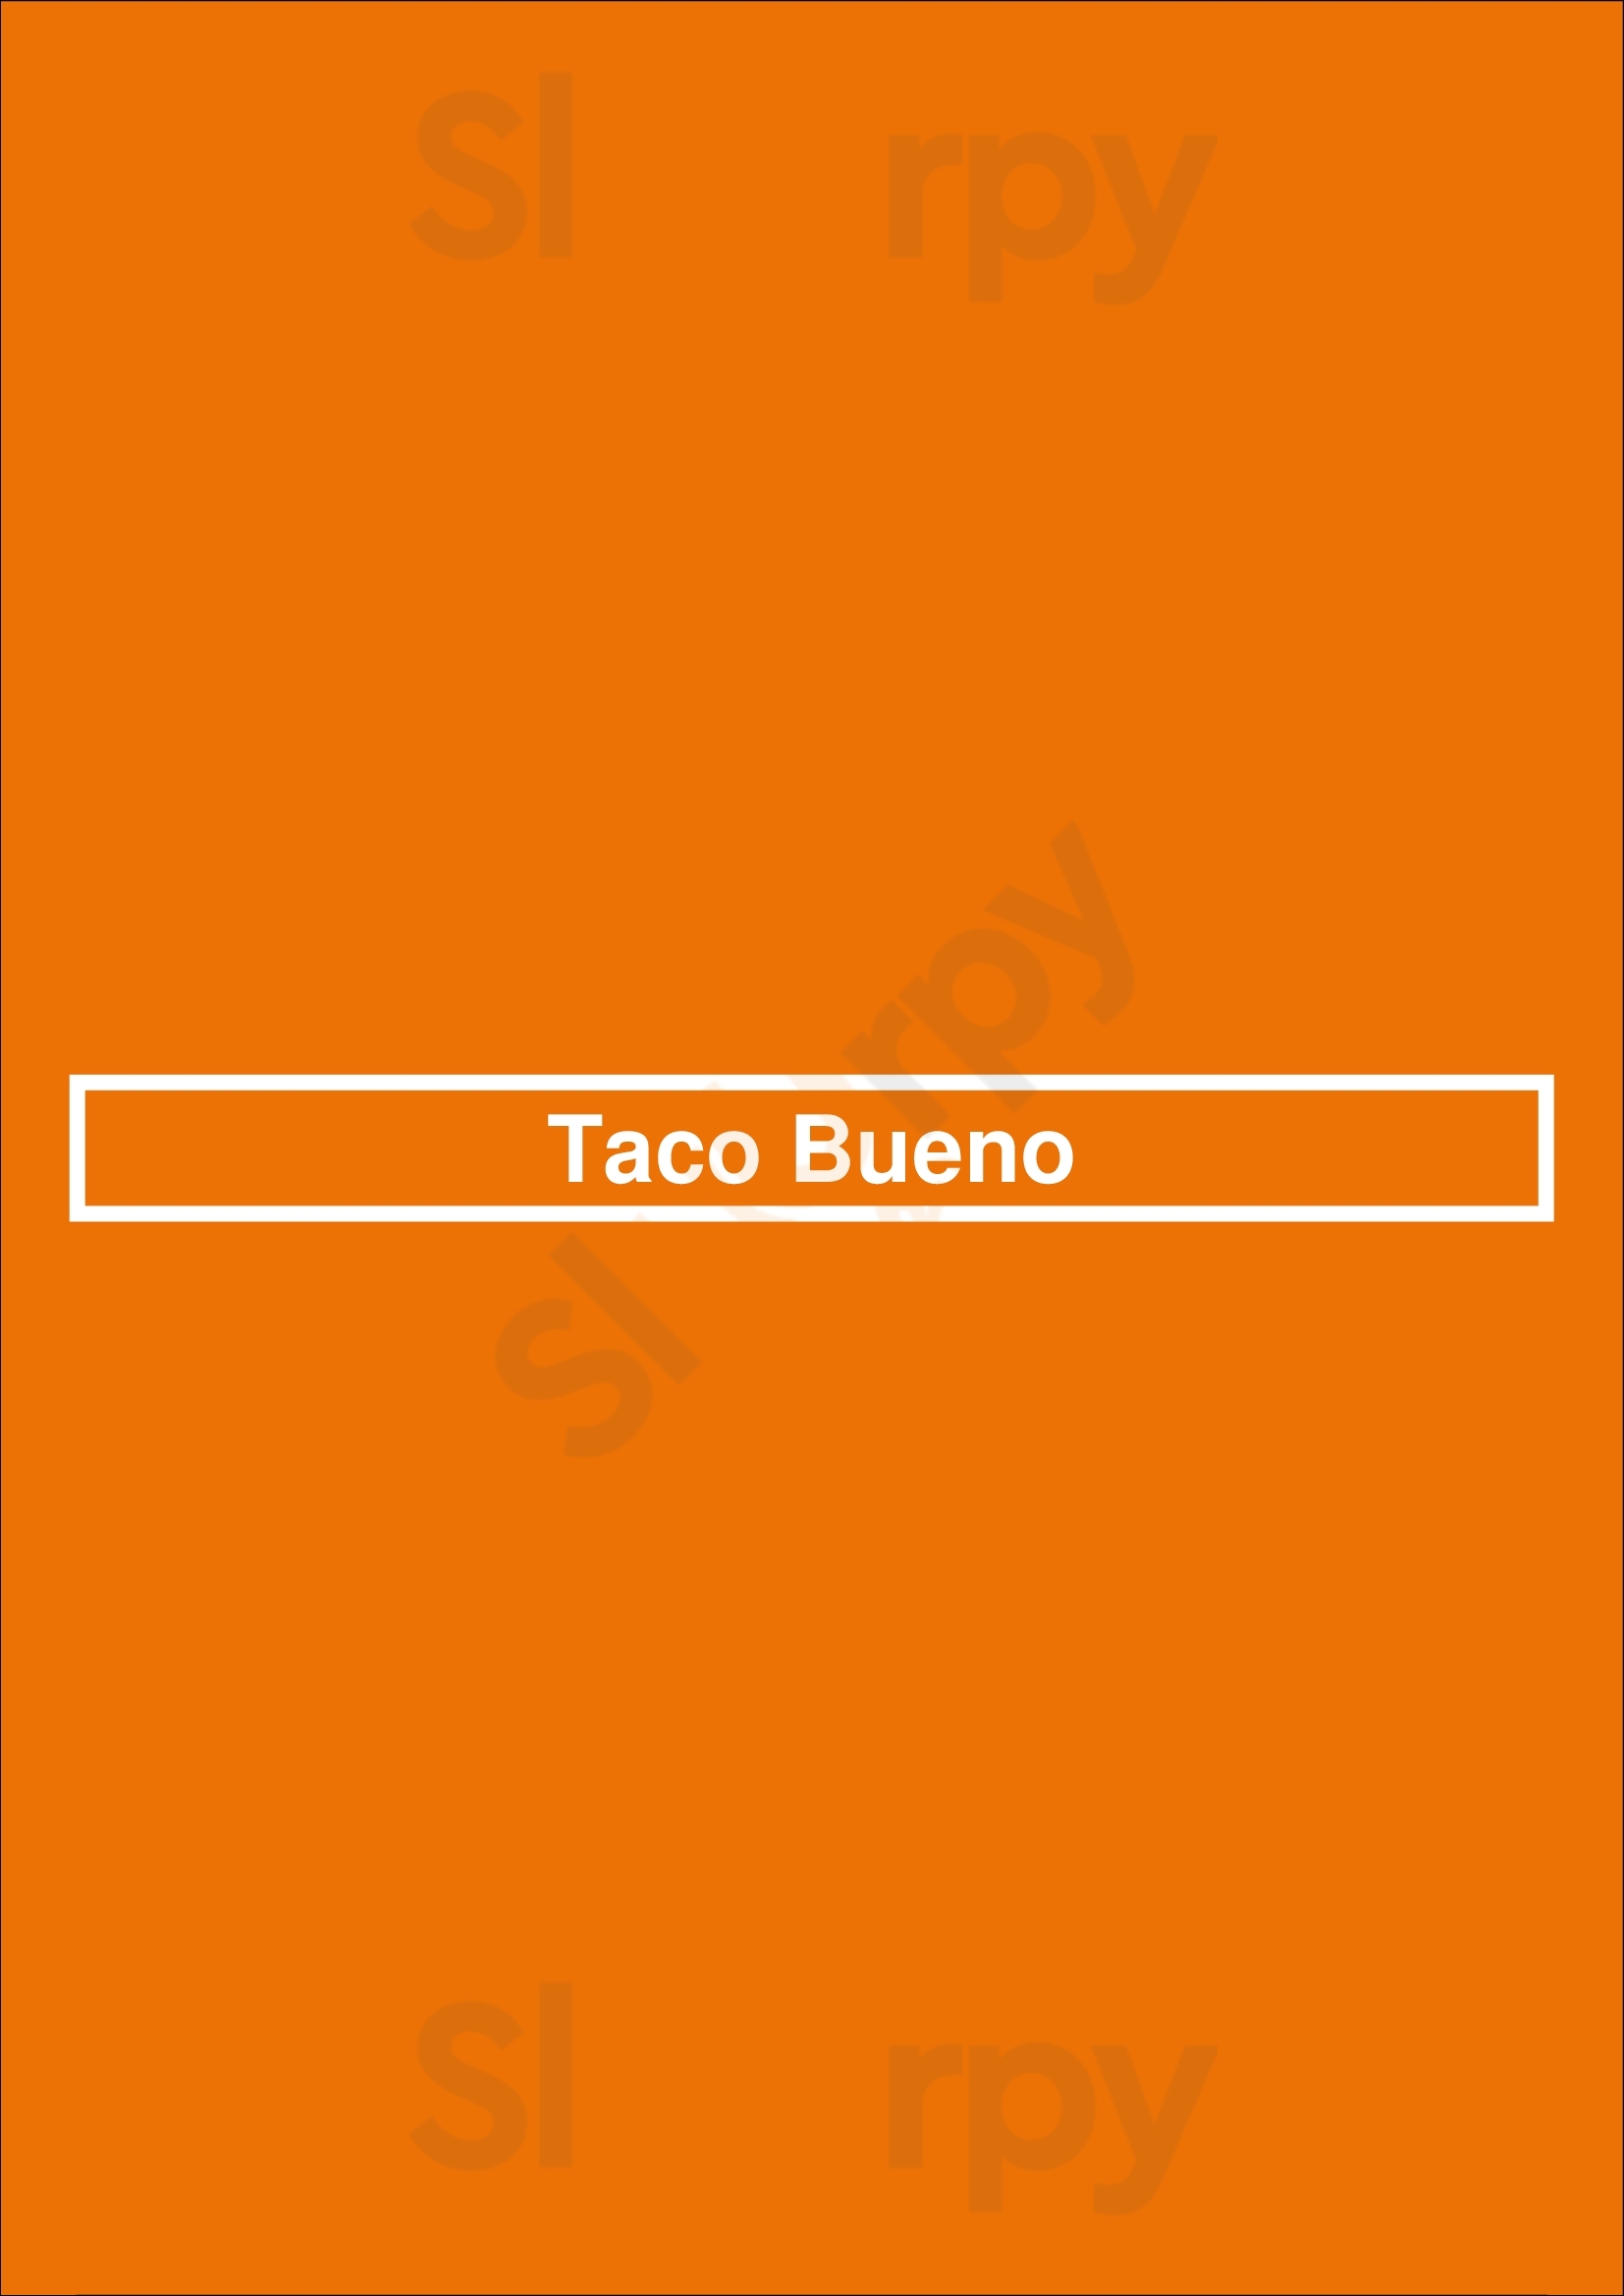 Taco Bueno Oklahoma City Menu - 1